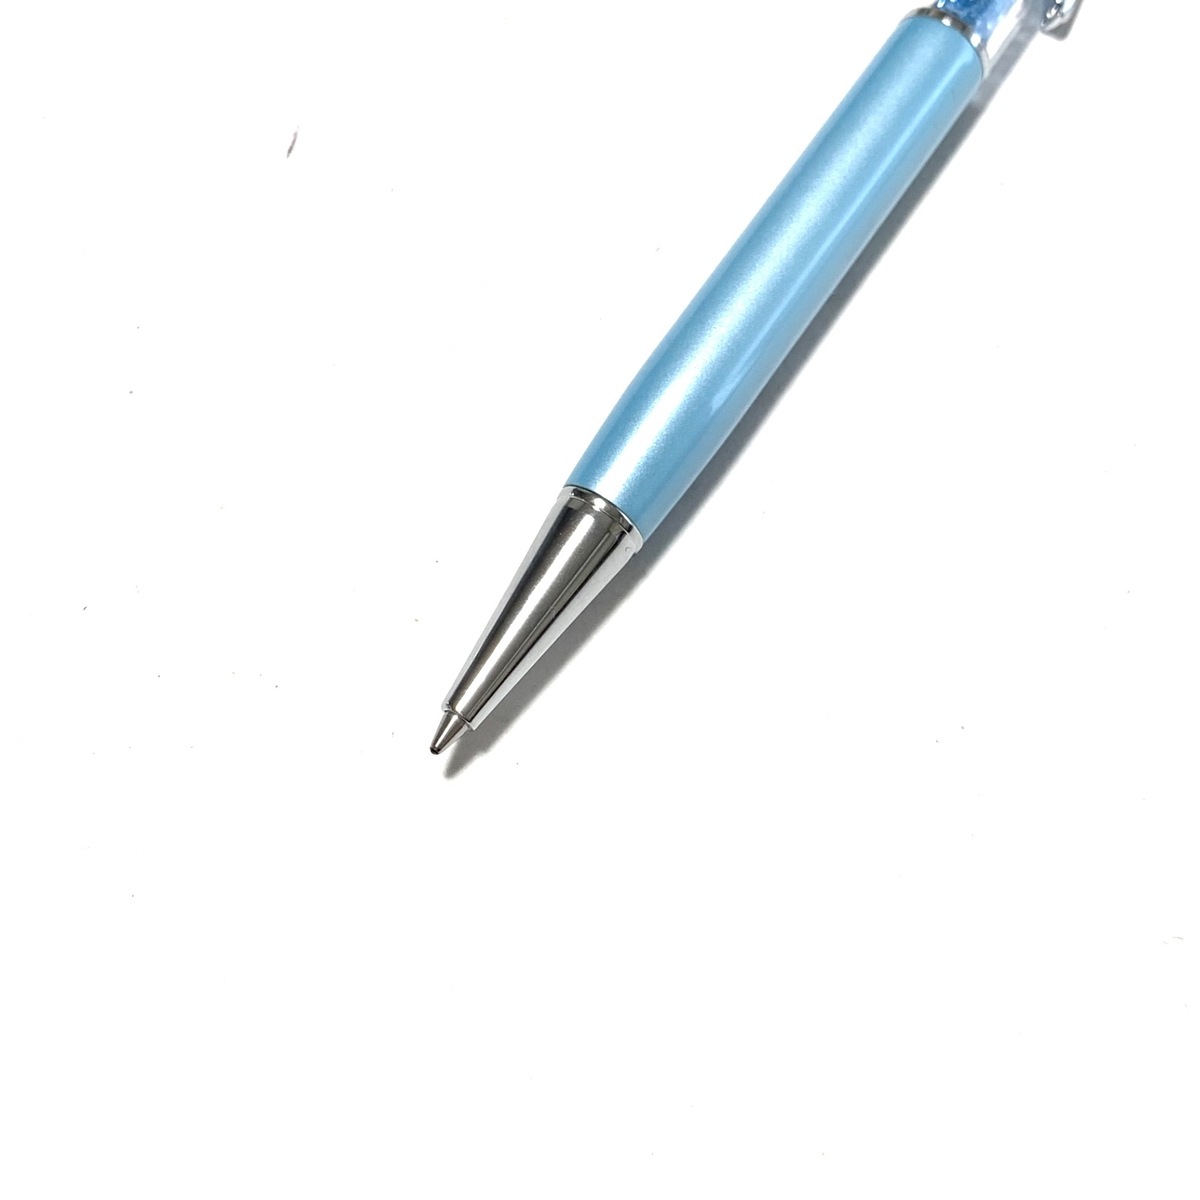 【中古】SWAROVSKI(スワロフスキー) ボールペン インクあり(黒) ライトブルー×シルバー×クリア スワロフスキークリスタル×プラスチック×金属素材 3